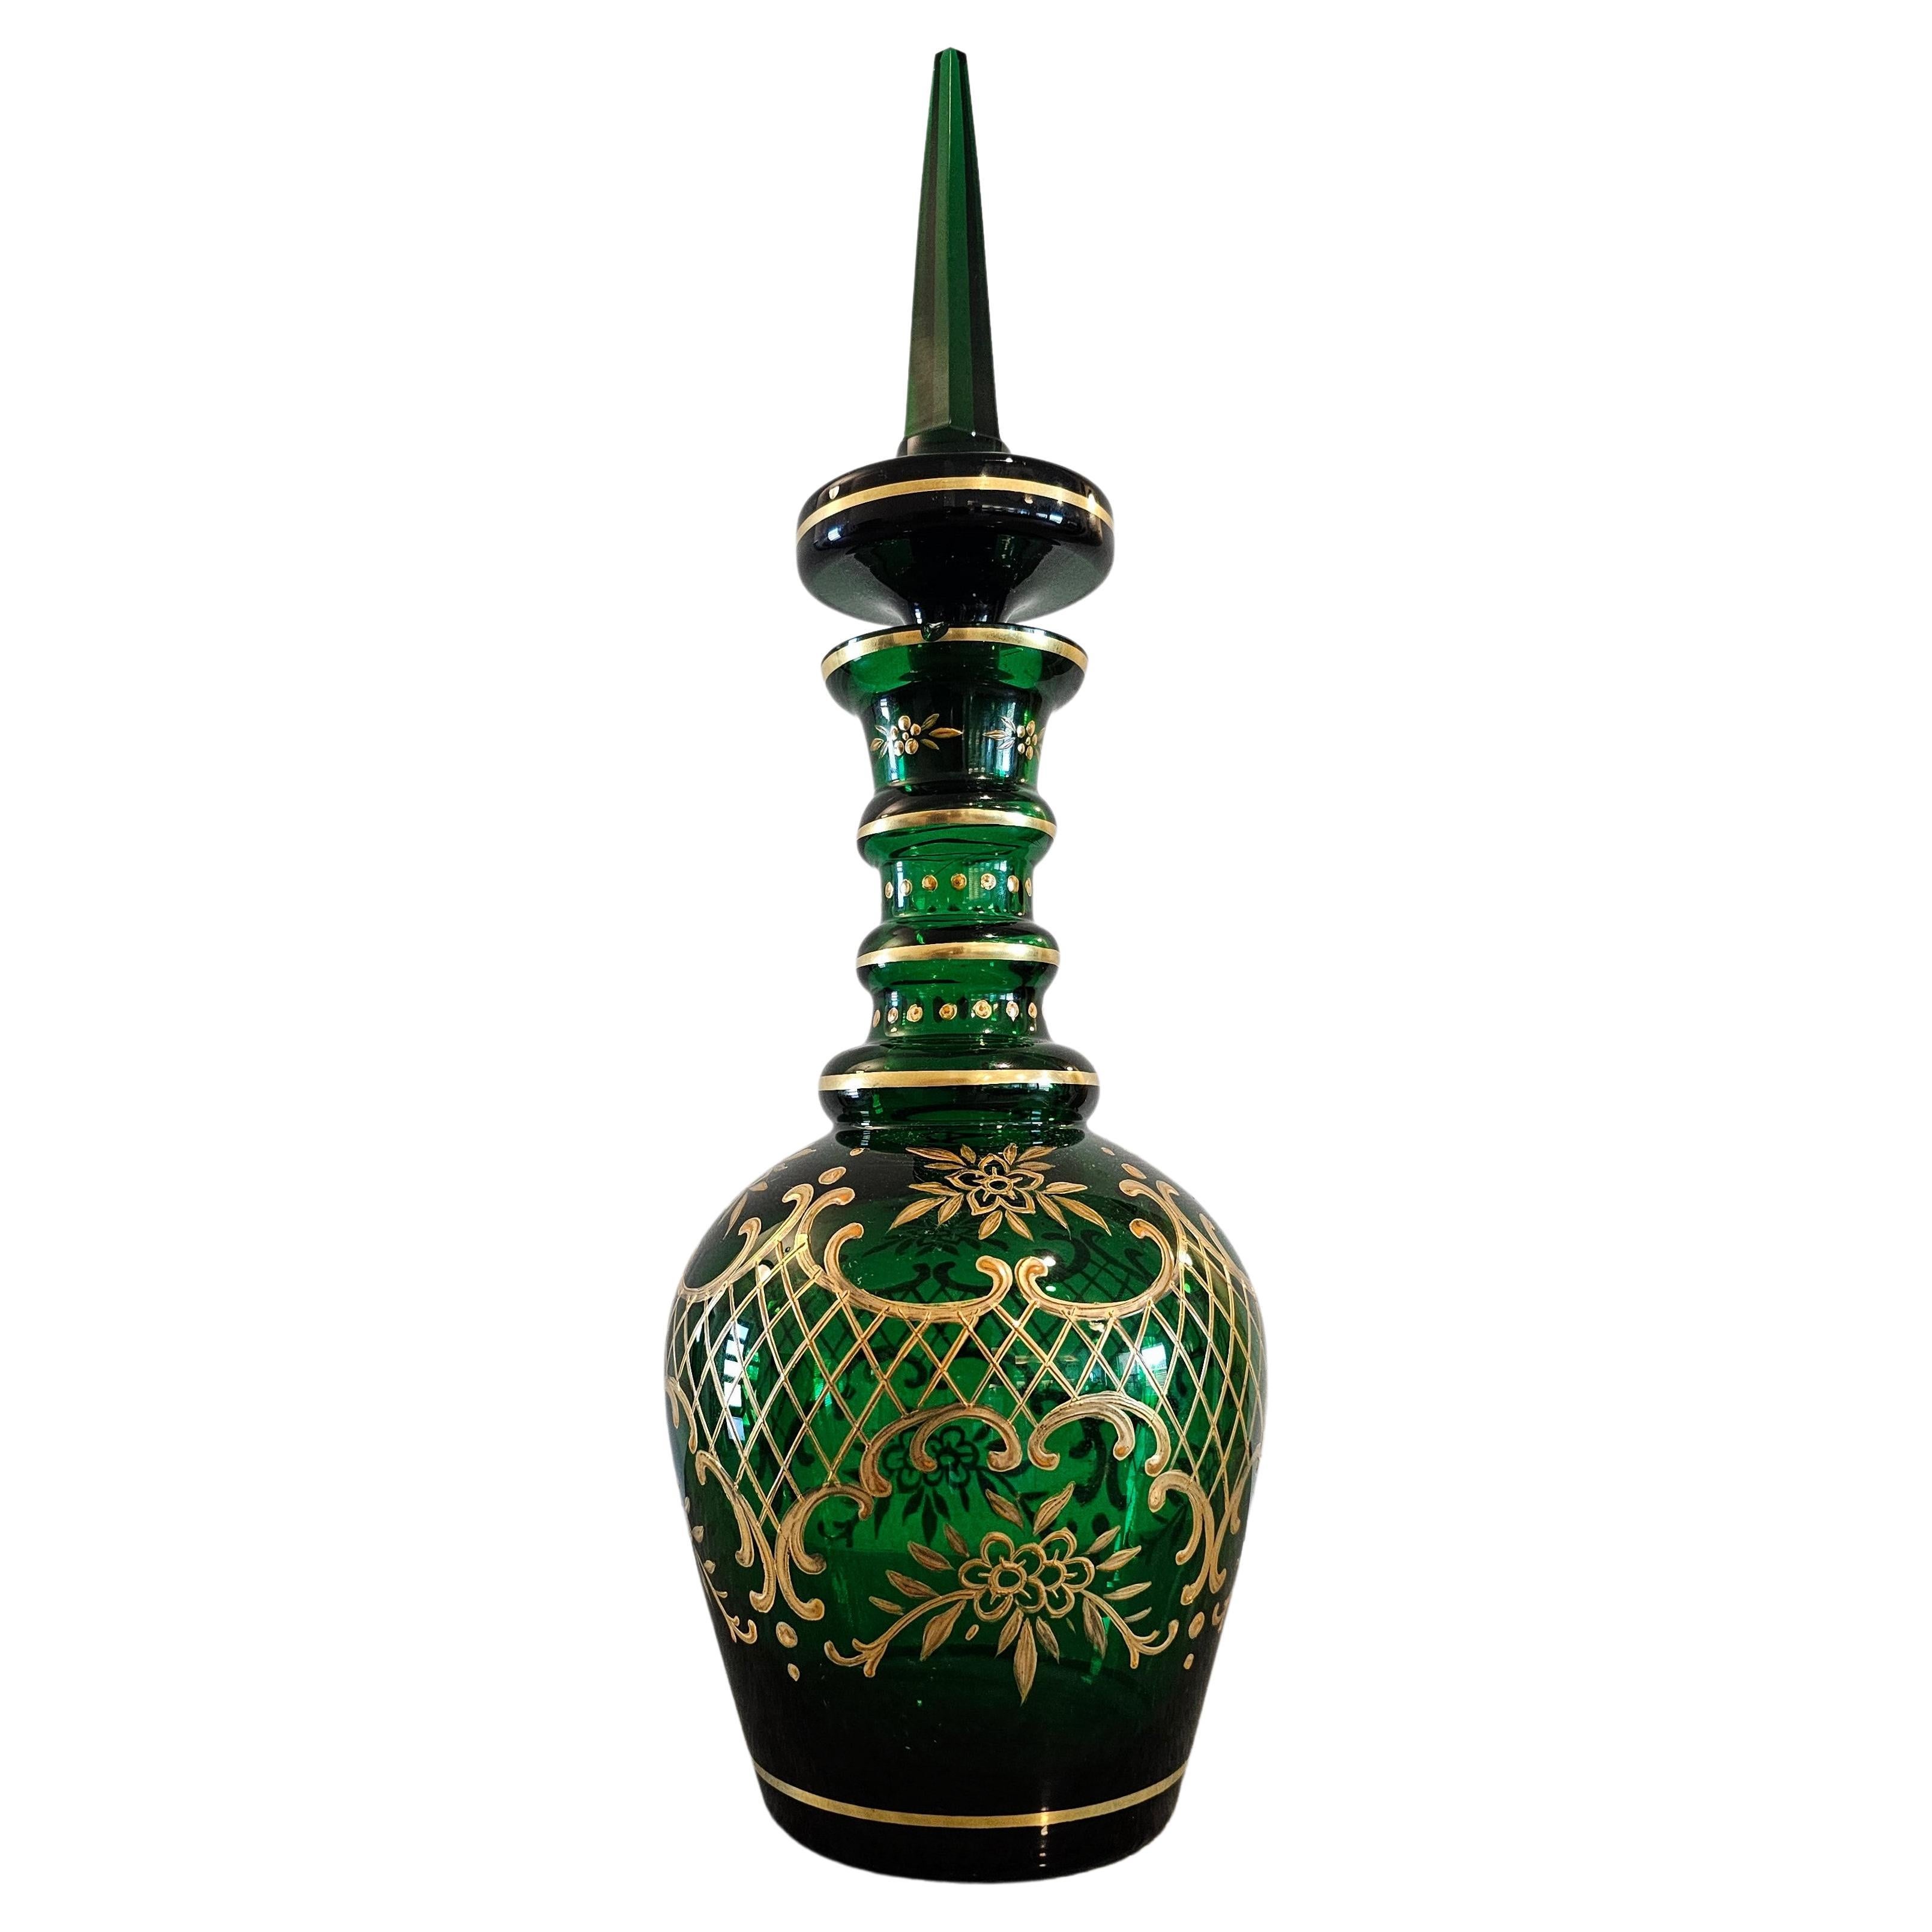 Antique Bohemian Moser Gilt Emerald Glass Decanter 